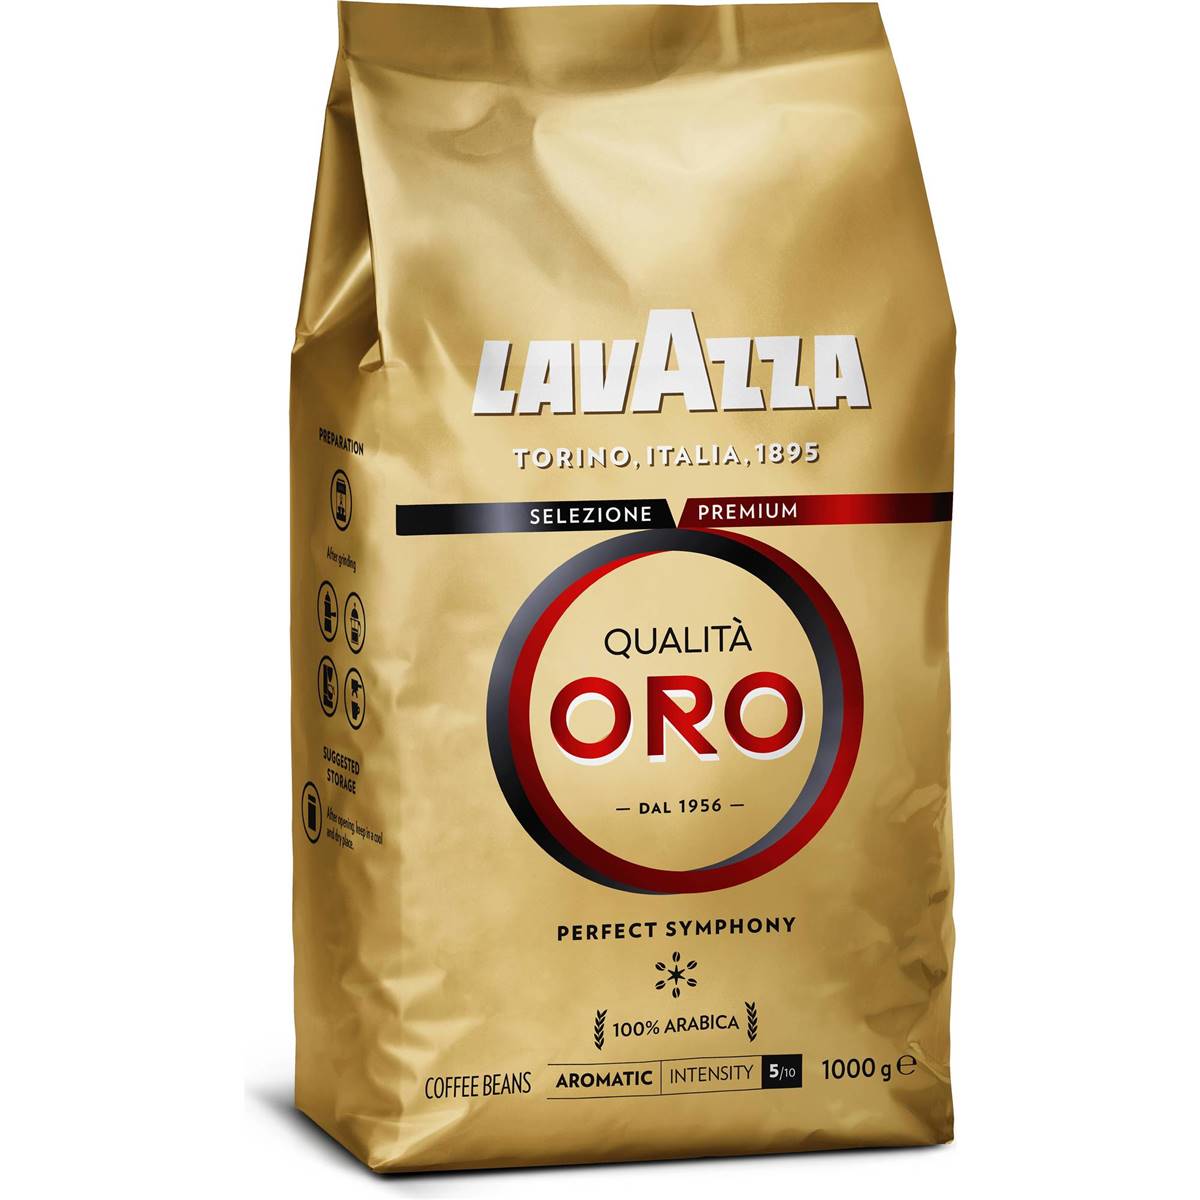 Lavazza Coffee Beans Qualita Oro